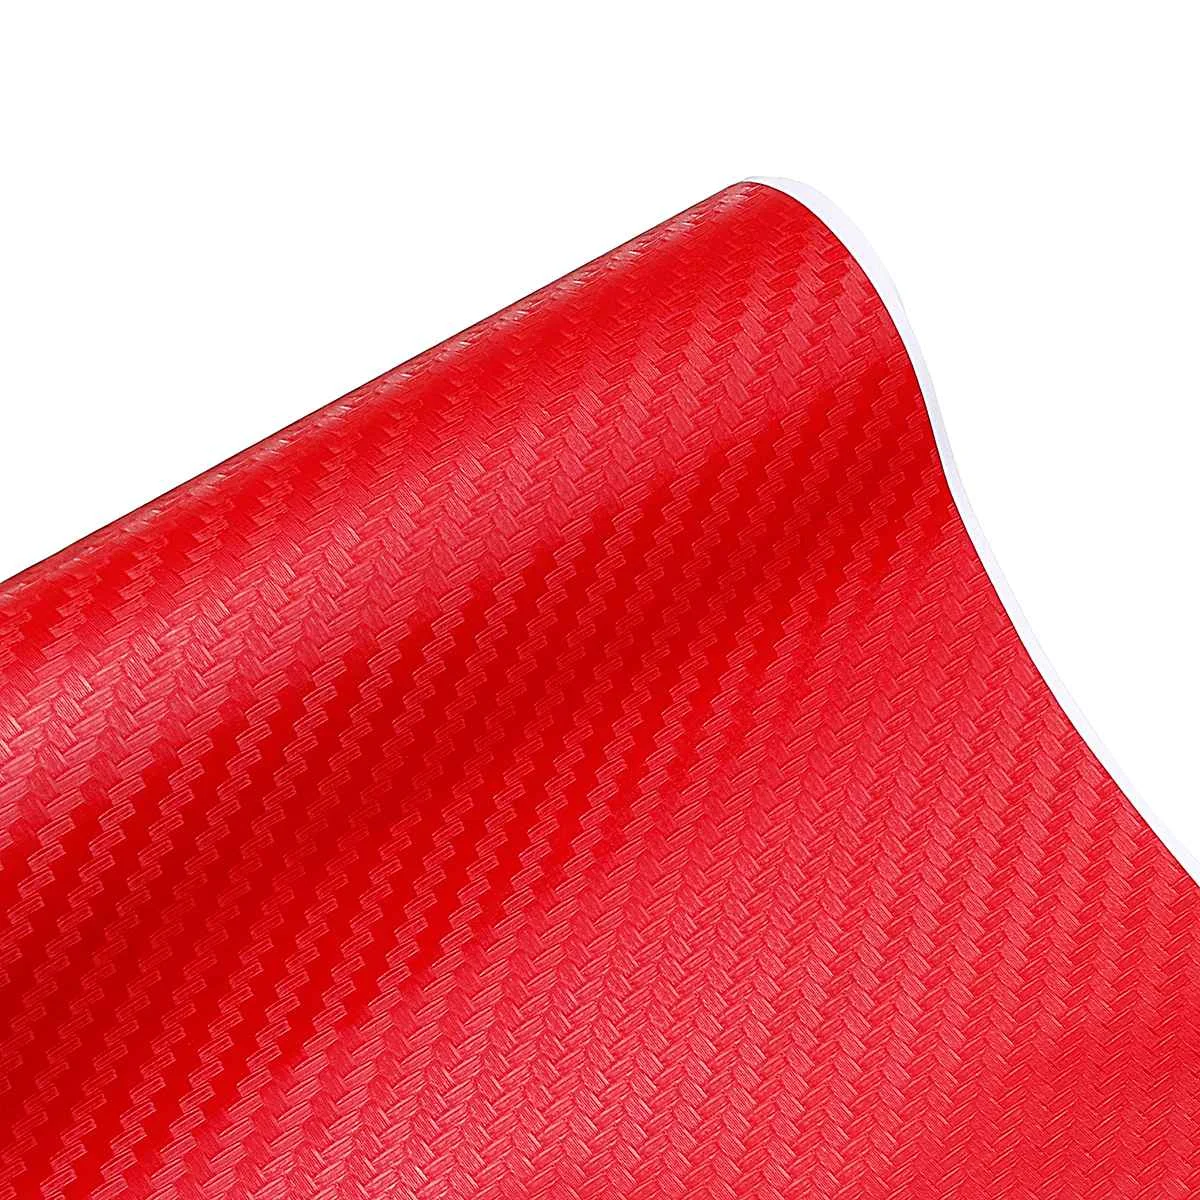 Автомобильный стиль, 3D наклейка из углеродного волокна, s, автомобильная наклейка, виниловая наклейка, пленка, рулон, сделай сам 127x20 см - Название цвета: Красный